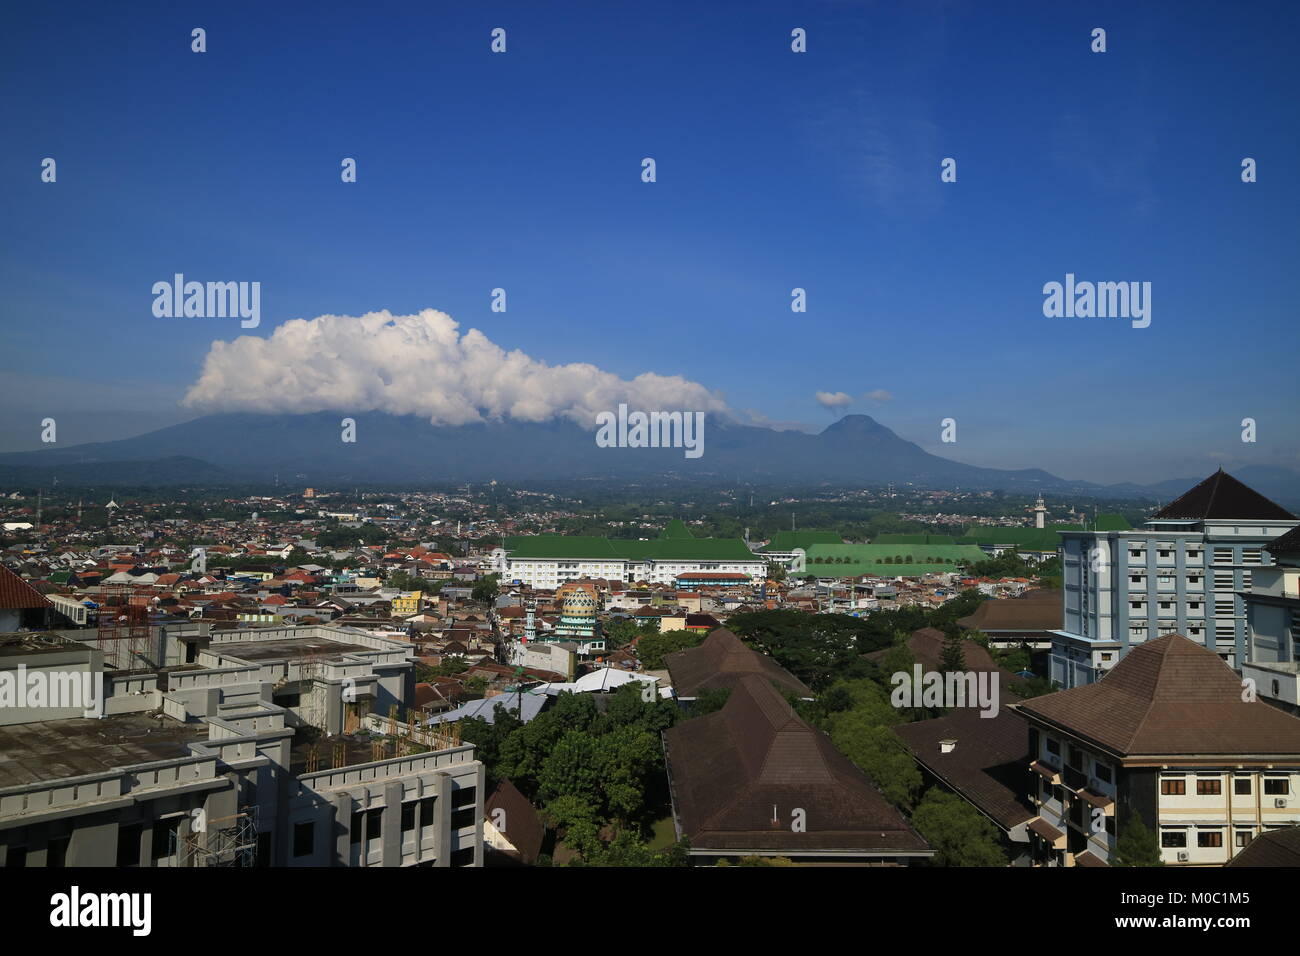 Mount Kawi, Malang East Java Stock Photo